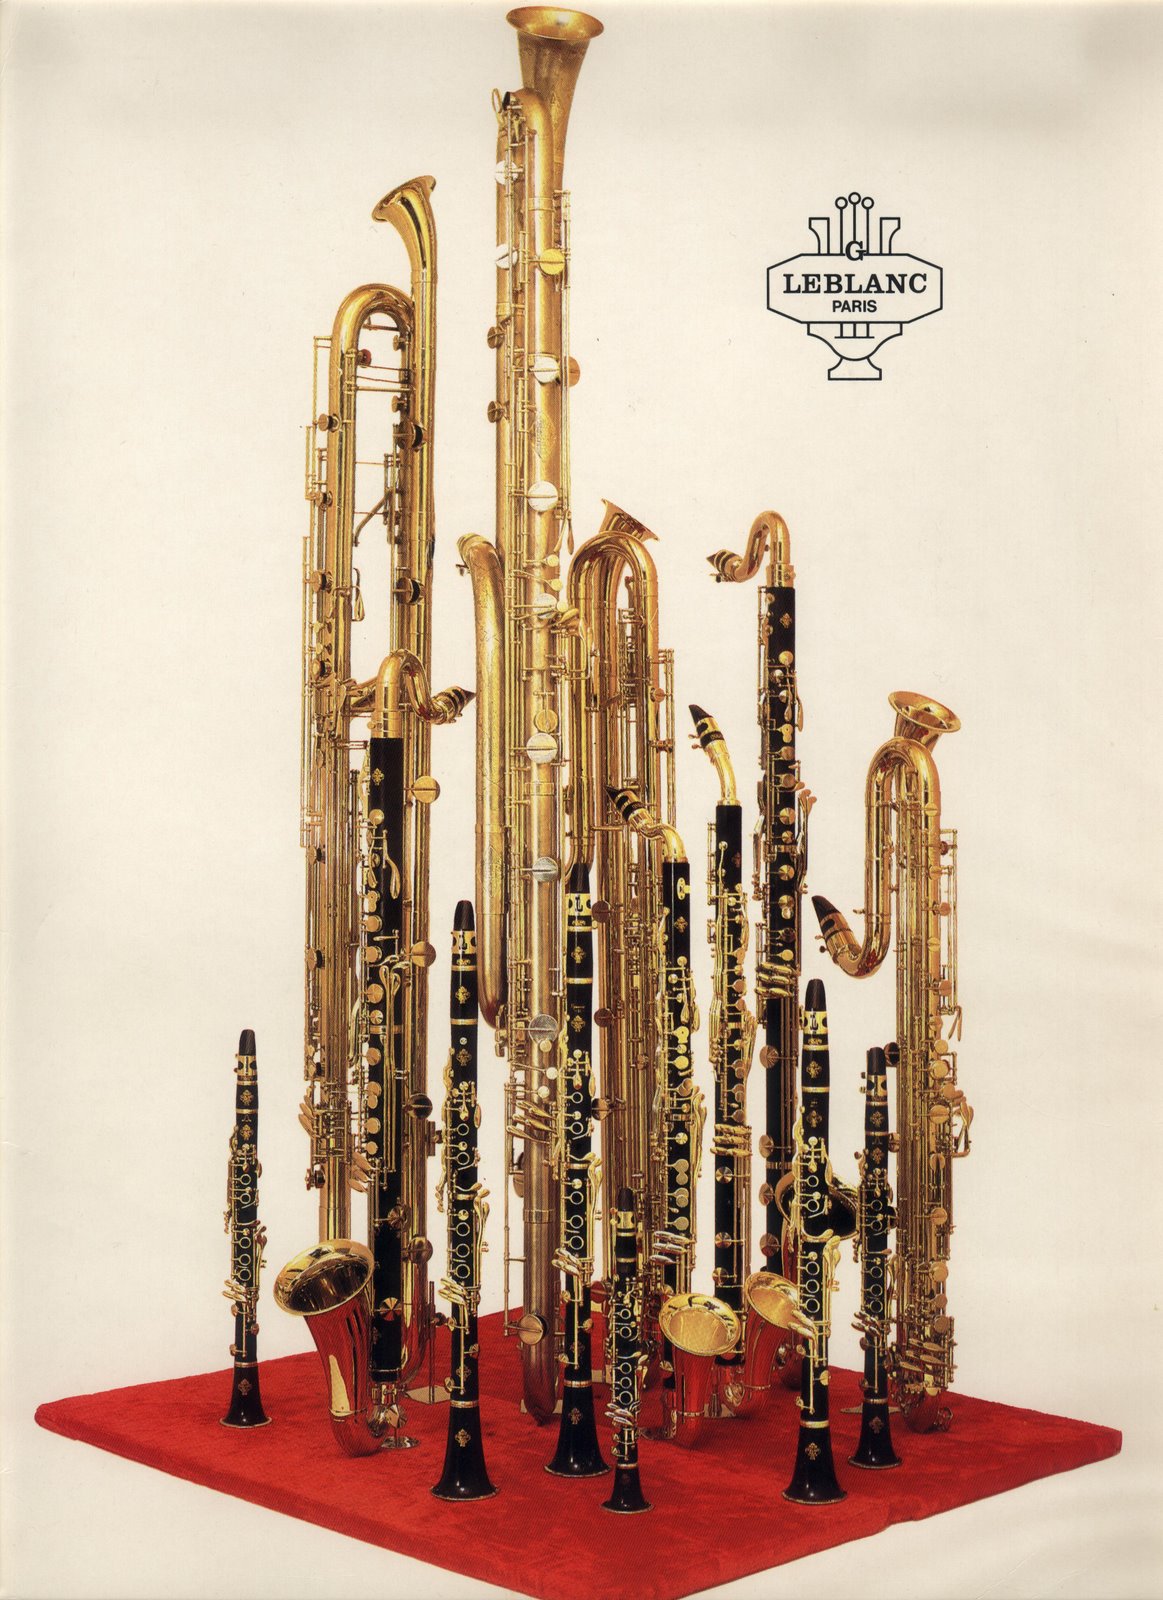 Valentin cases : Publicité de l'ensemble des 14 clarinette Leblanc.